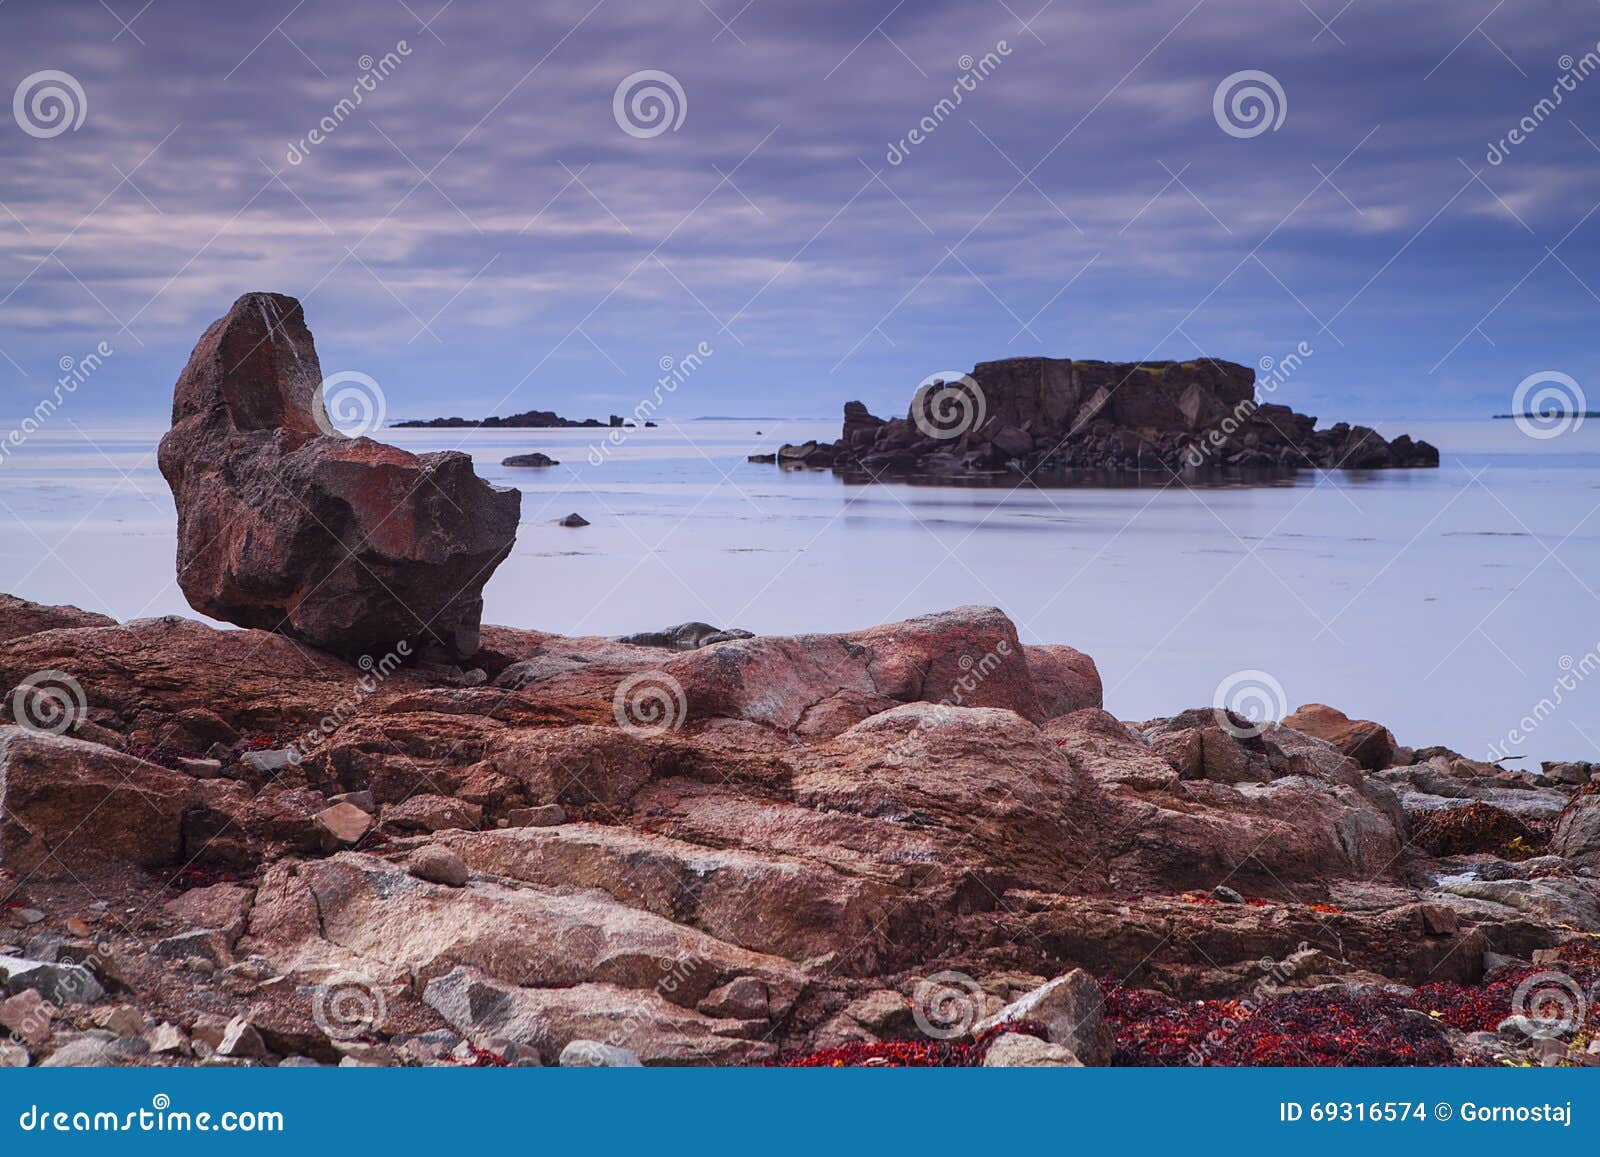 seal bay, of westfjords, iceland